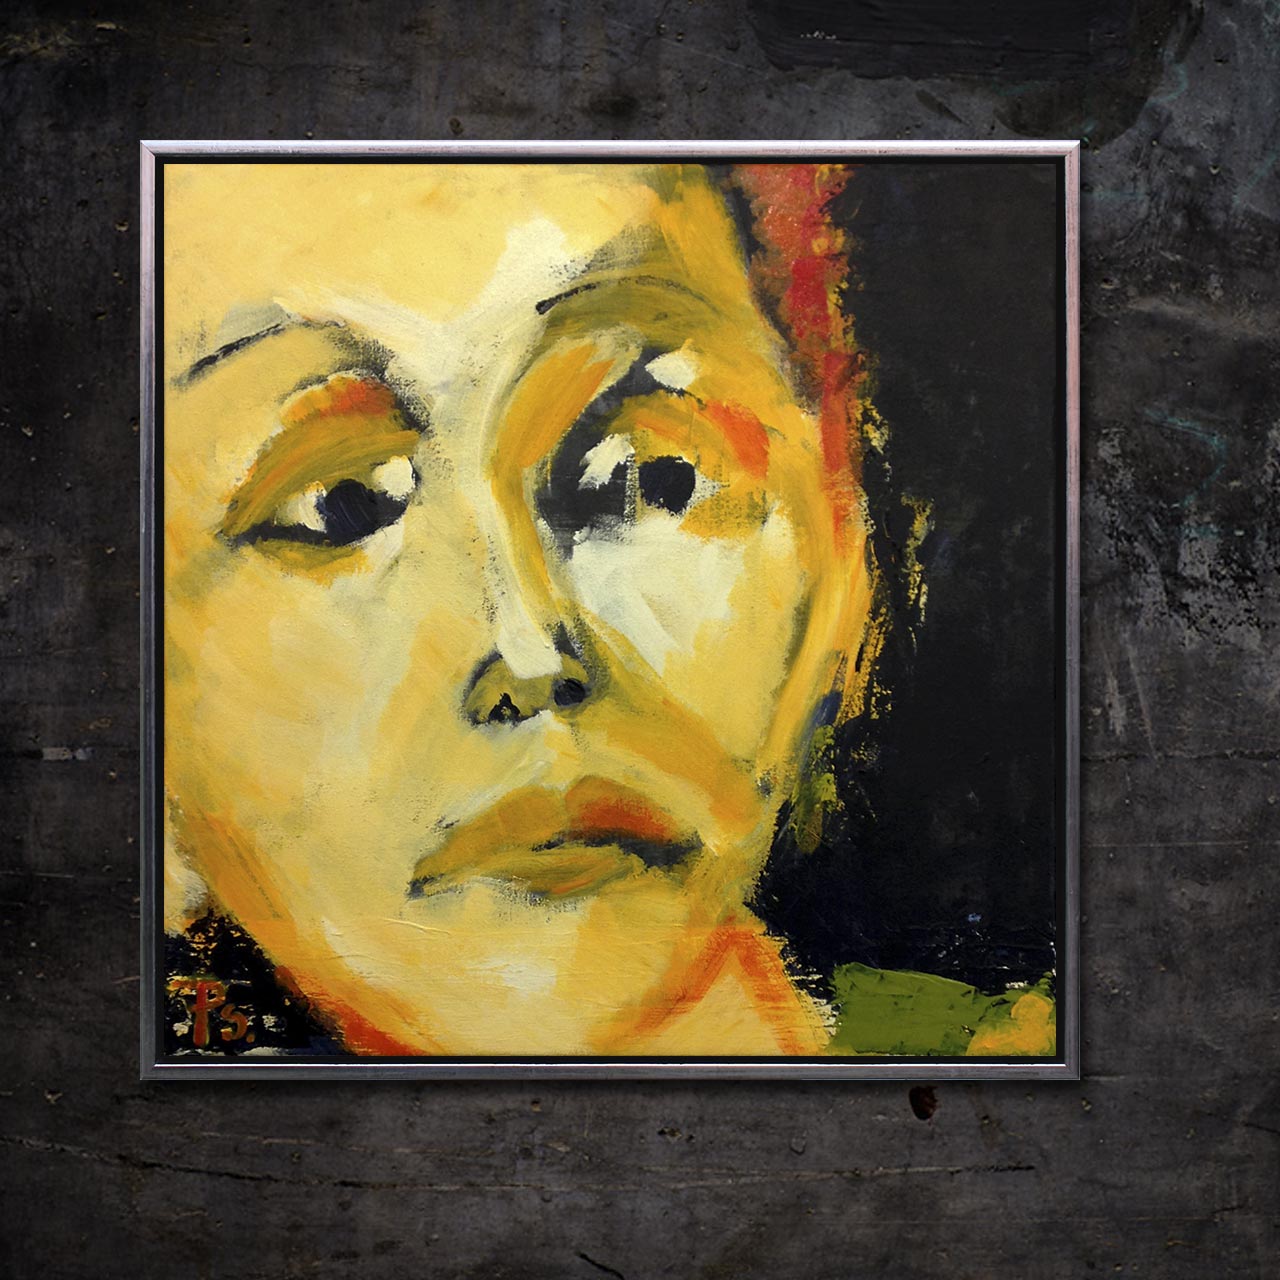 Et maleri der forestiller Edith Piaf og bærer titlen 'Spurven'. Maleriet er skabt af portrætmaler Peter Simonsen